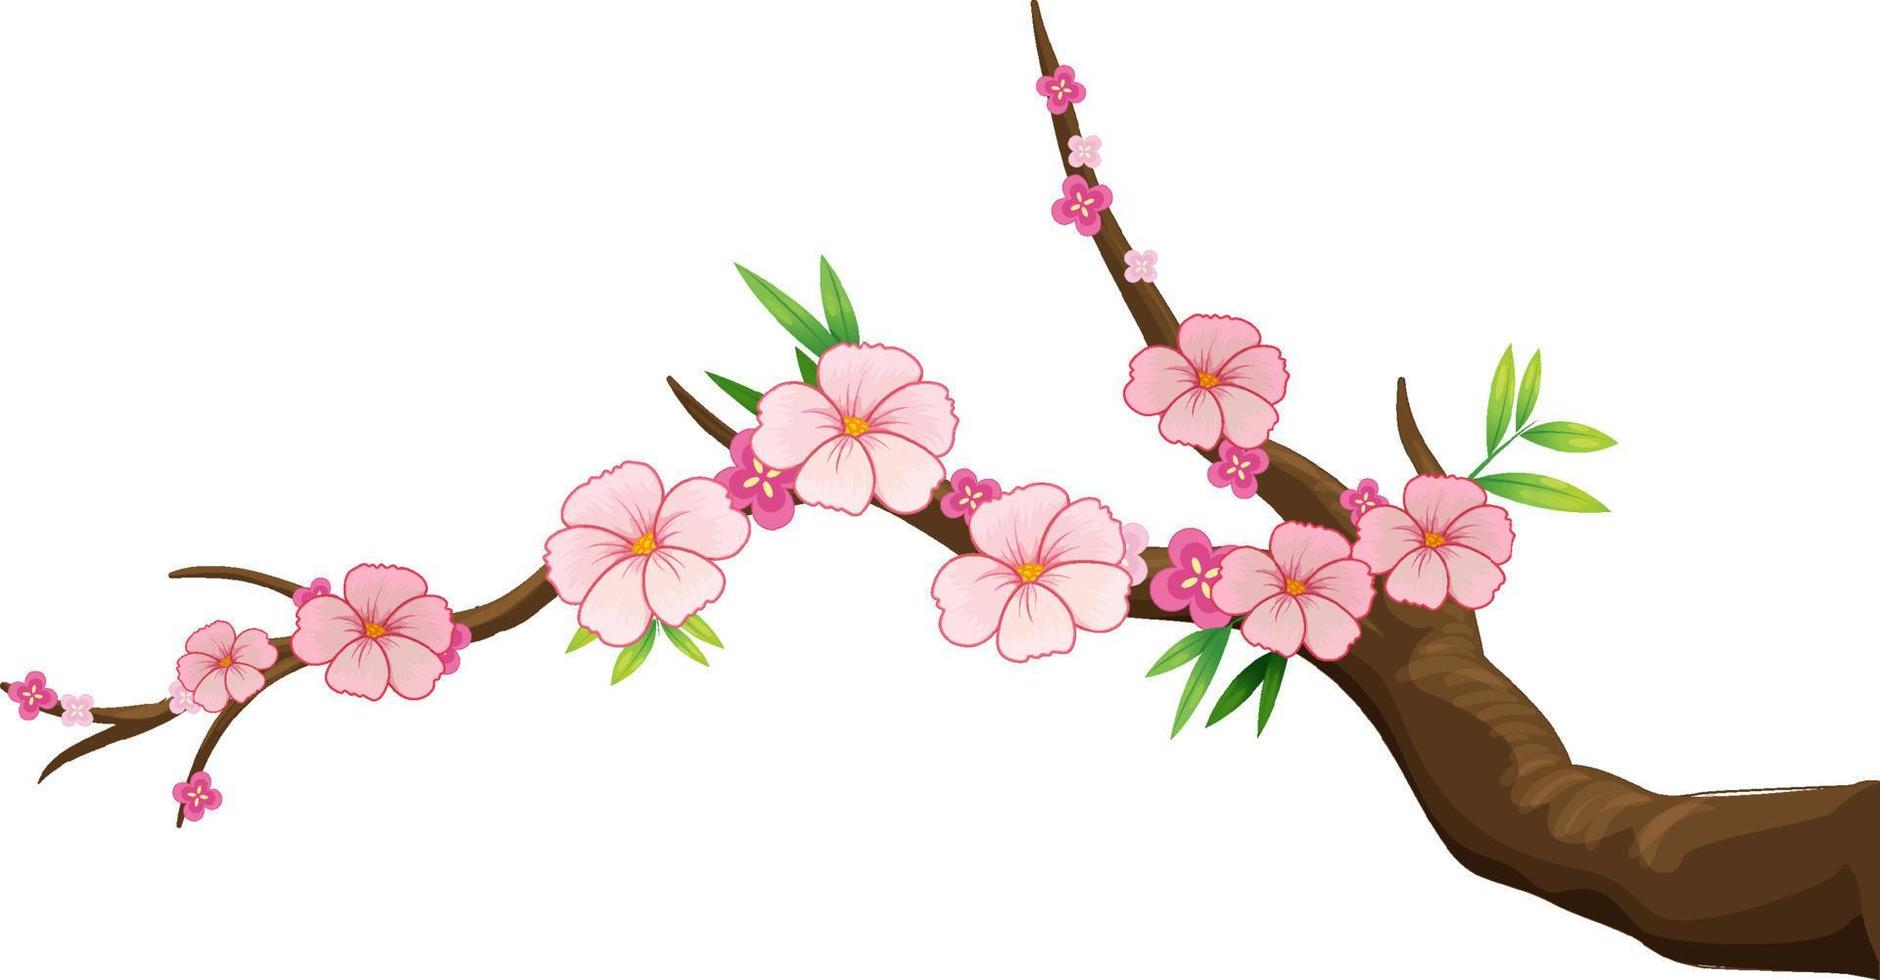 ramo di fiori di ciliegio isolato vettore